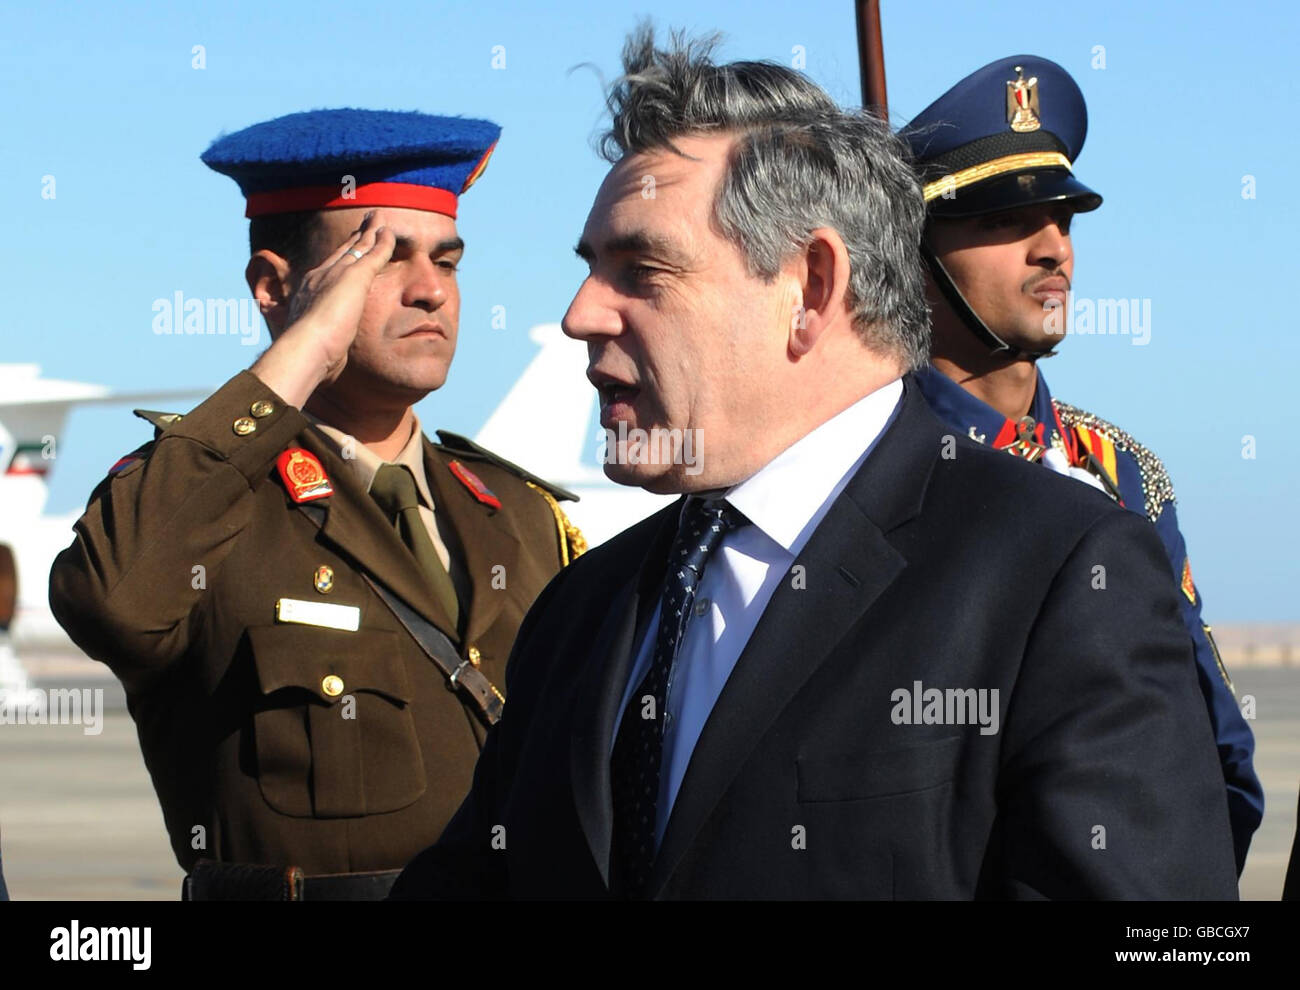 Der britische Premierminister Gordon Brown kommt in Sharm El Sheikh zu Gesprächen über die Lage in Gaza unter dem gemeinsamen Vorsitz des ägyptischen Präsidenten Hosni Mubarak und des französischen Präsidenten Nicolas Sarkozy. Stockfoto